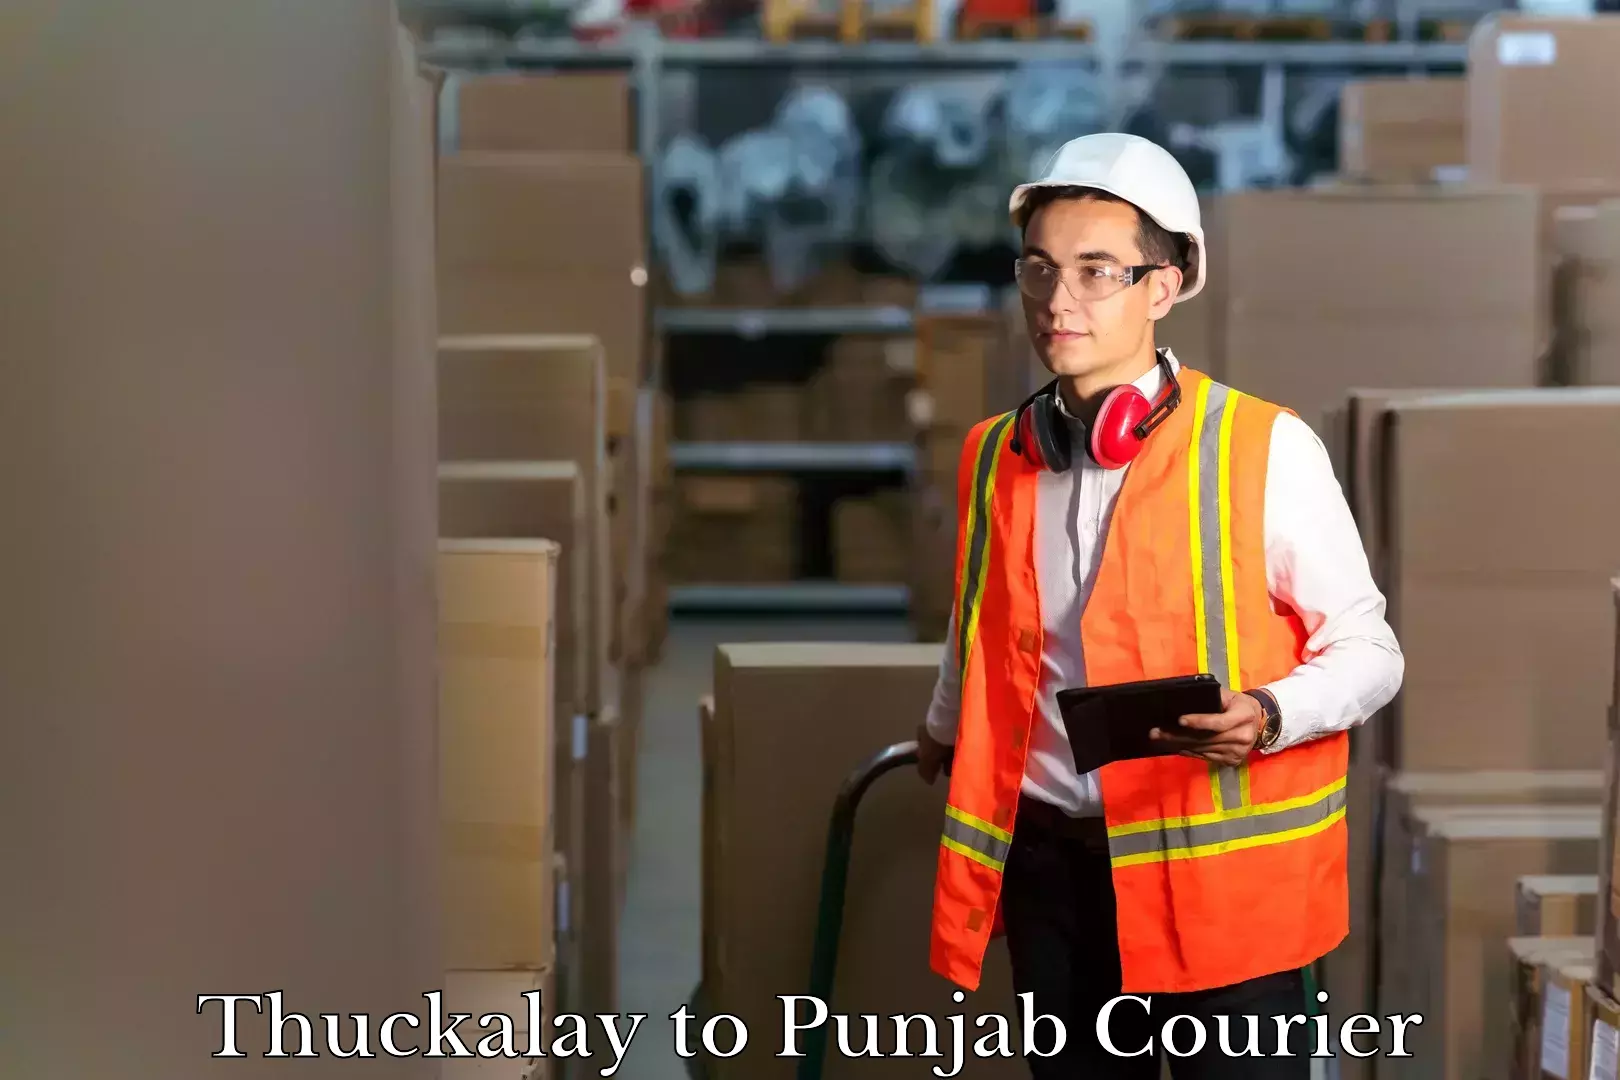 Baggage shipping quotes Thuckalay to Punjab